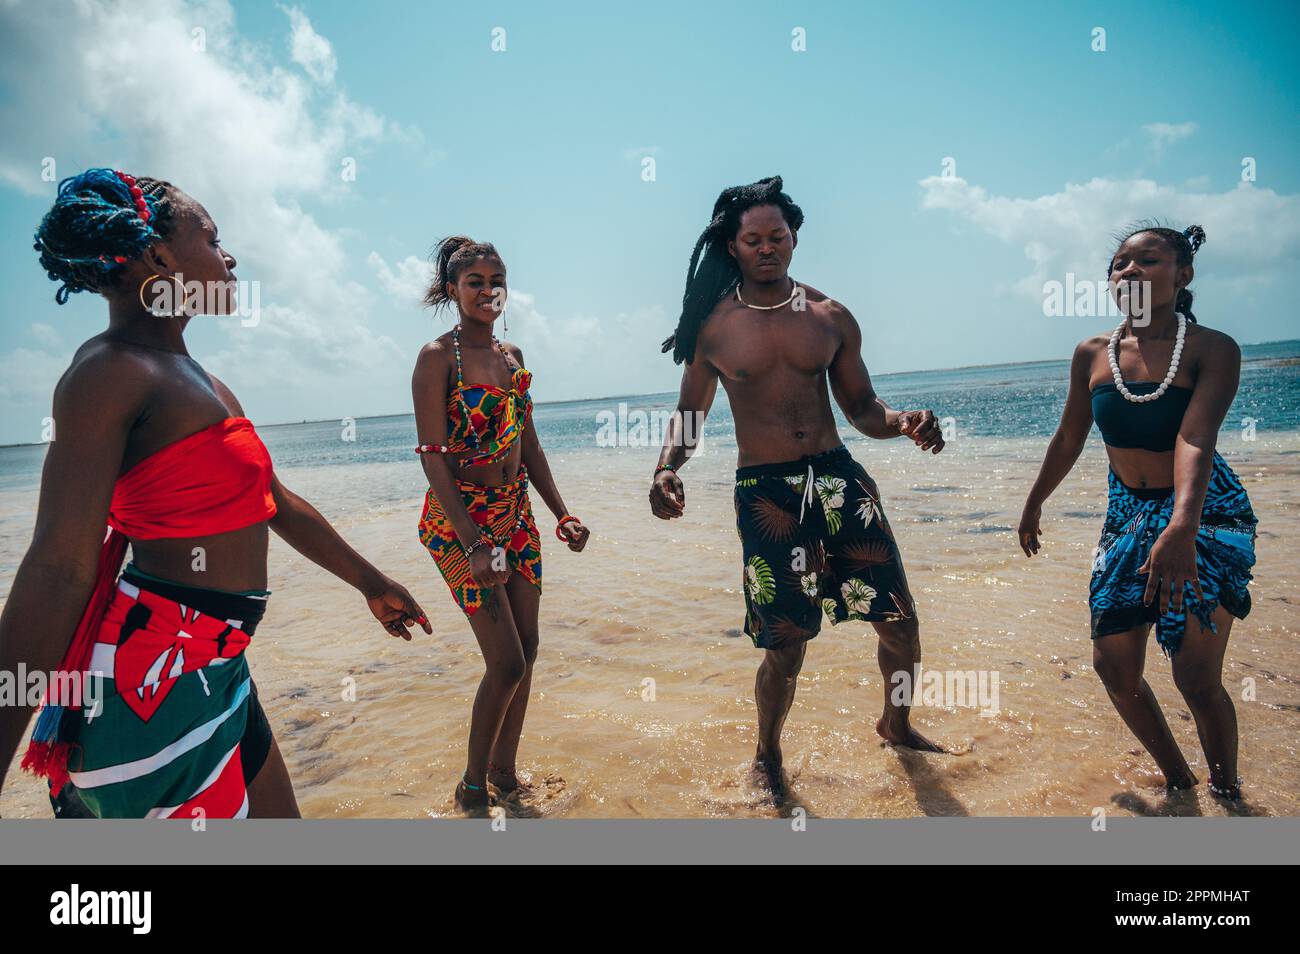 Los kenianos bailan en la playa con ropa típica local Foto de stock